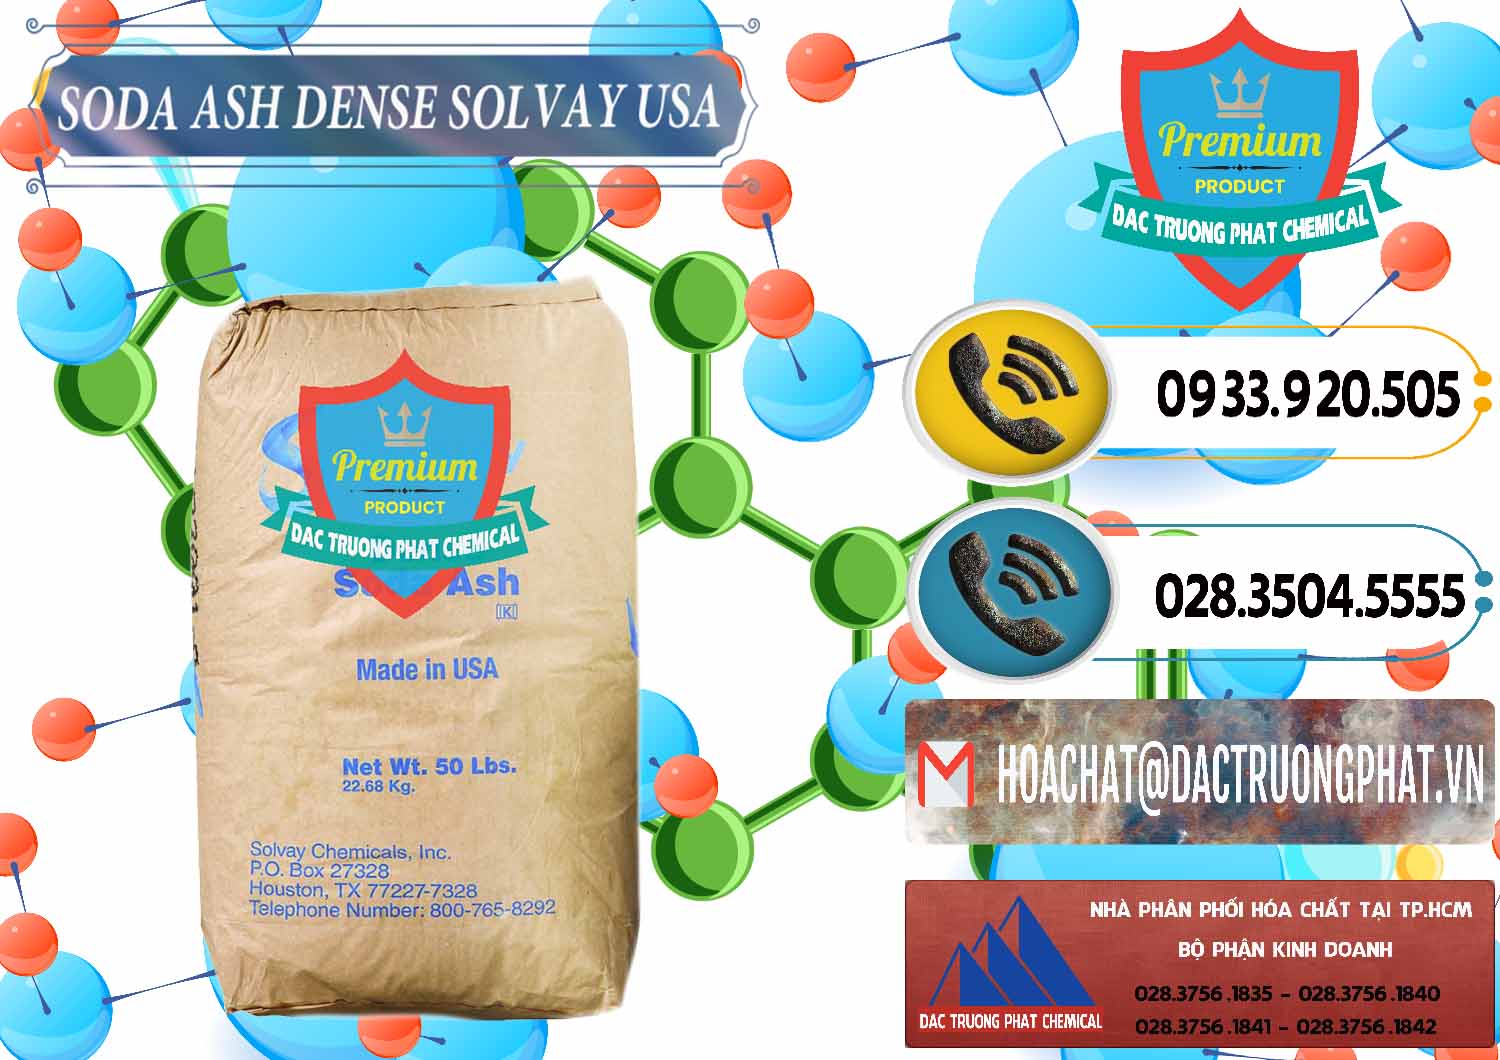 Cty chuyên cung cấp ( bán ) Soda Ash Dense - NA2CO3 Solvay Mỹ USA - 0337 - Nhập khẩu & cung cấp hóa chất tại TP.HCM - hoachatdetnhuom.vn